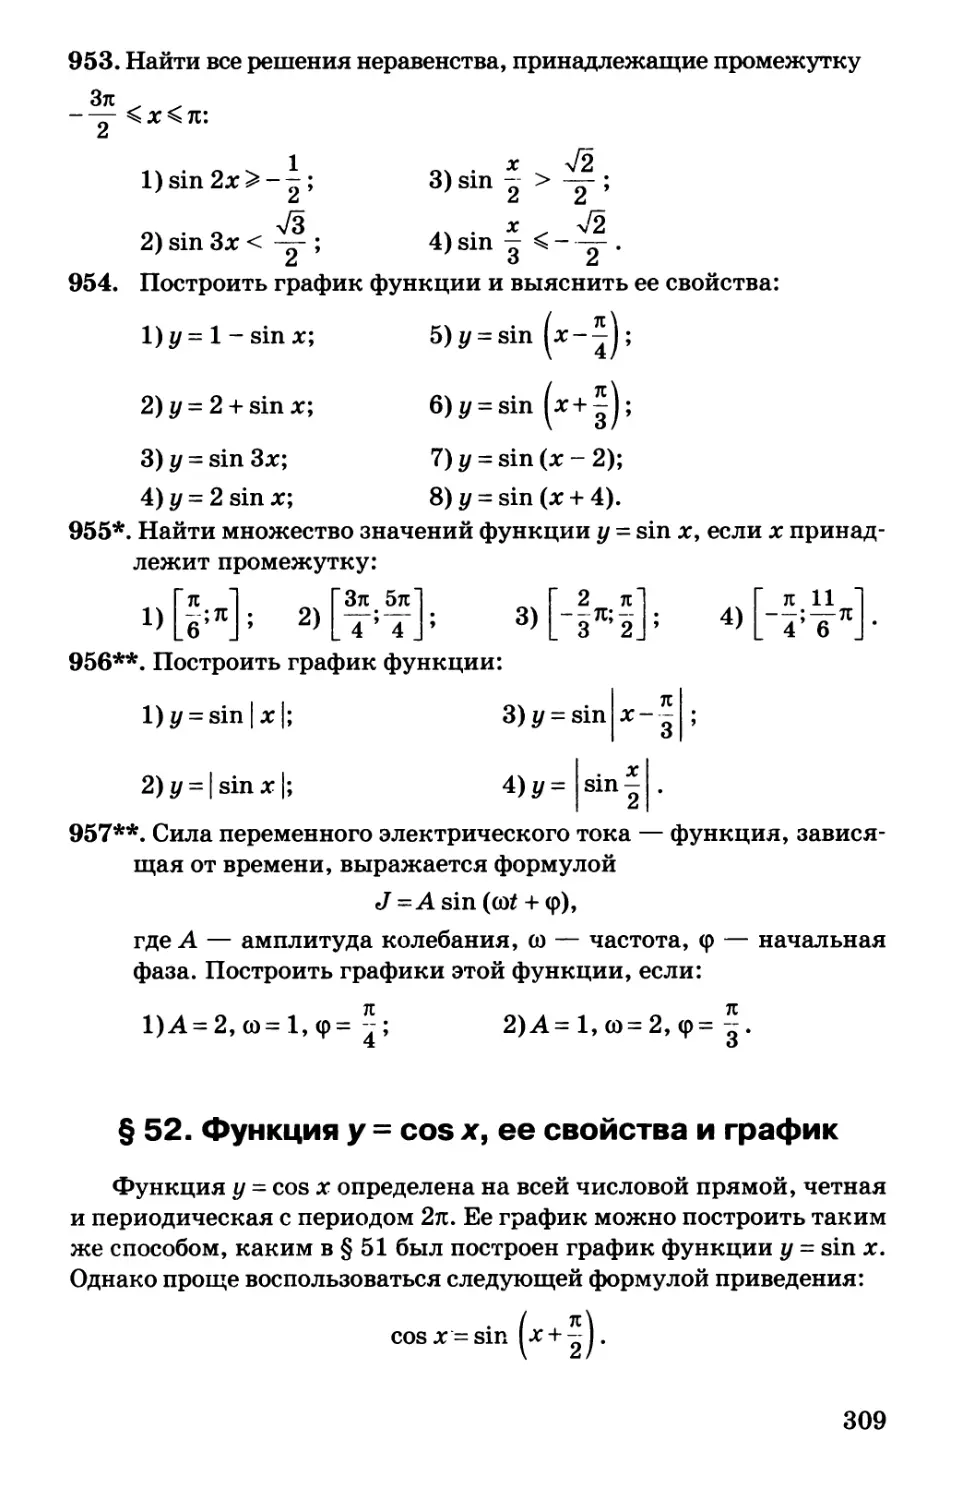 § 52. Функция у = cos x, ее свойства и график